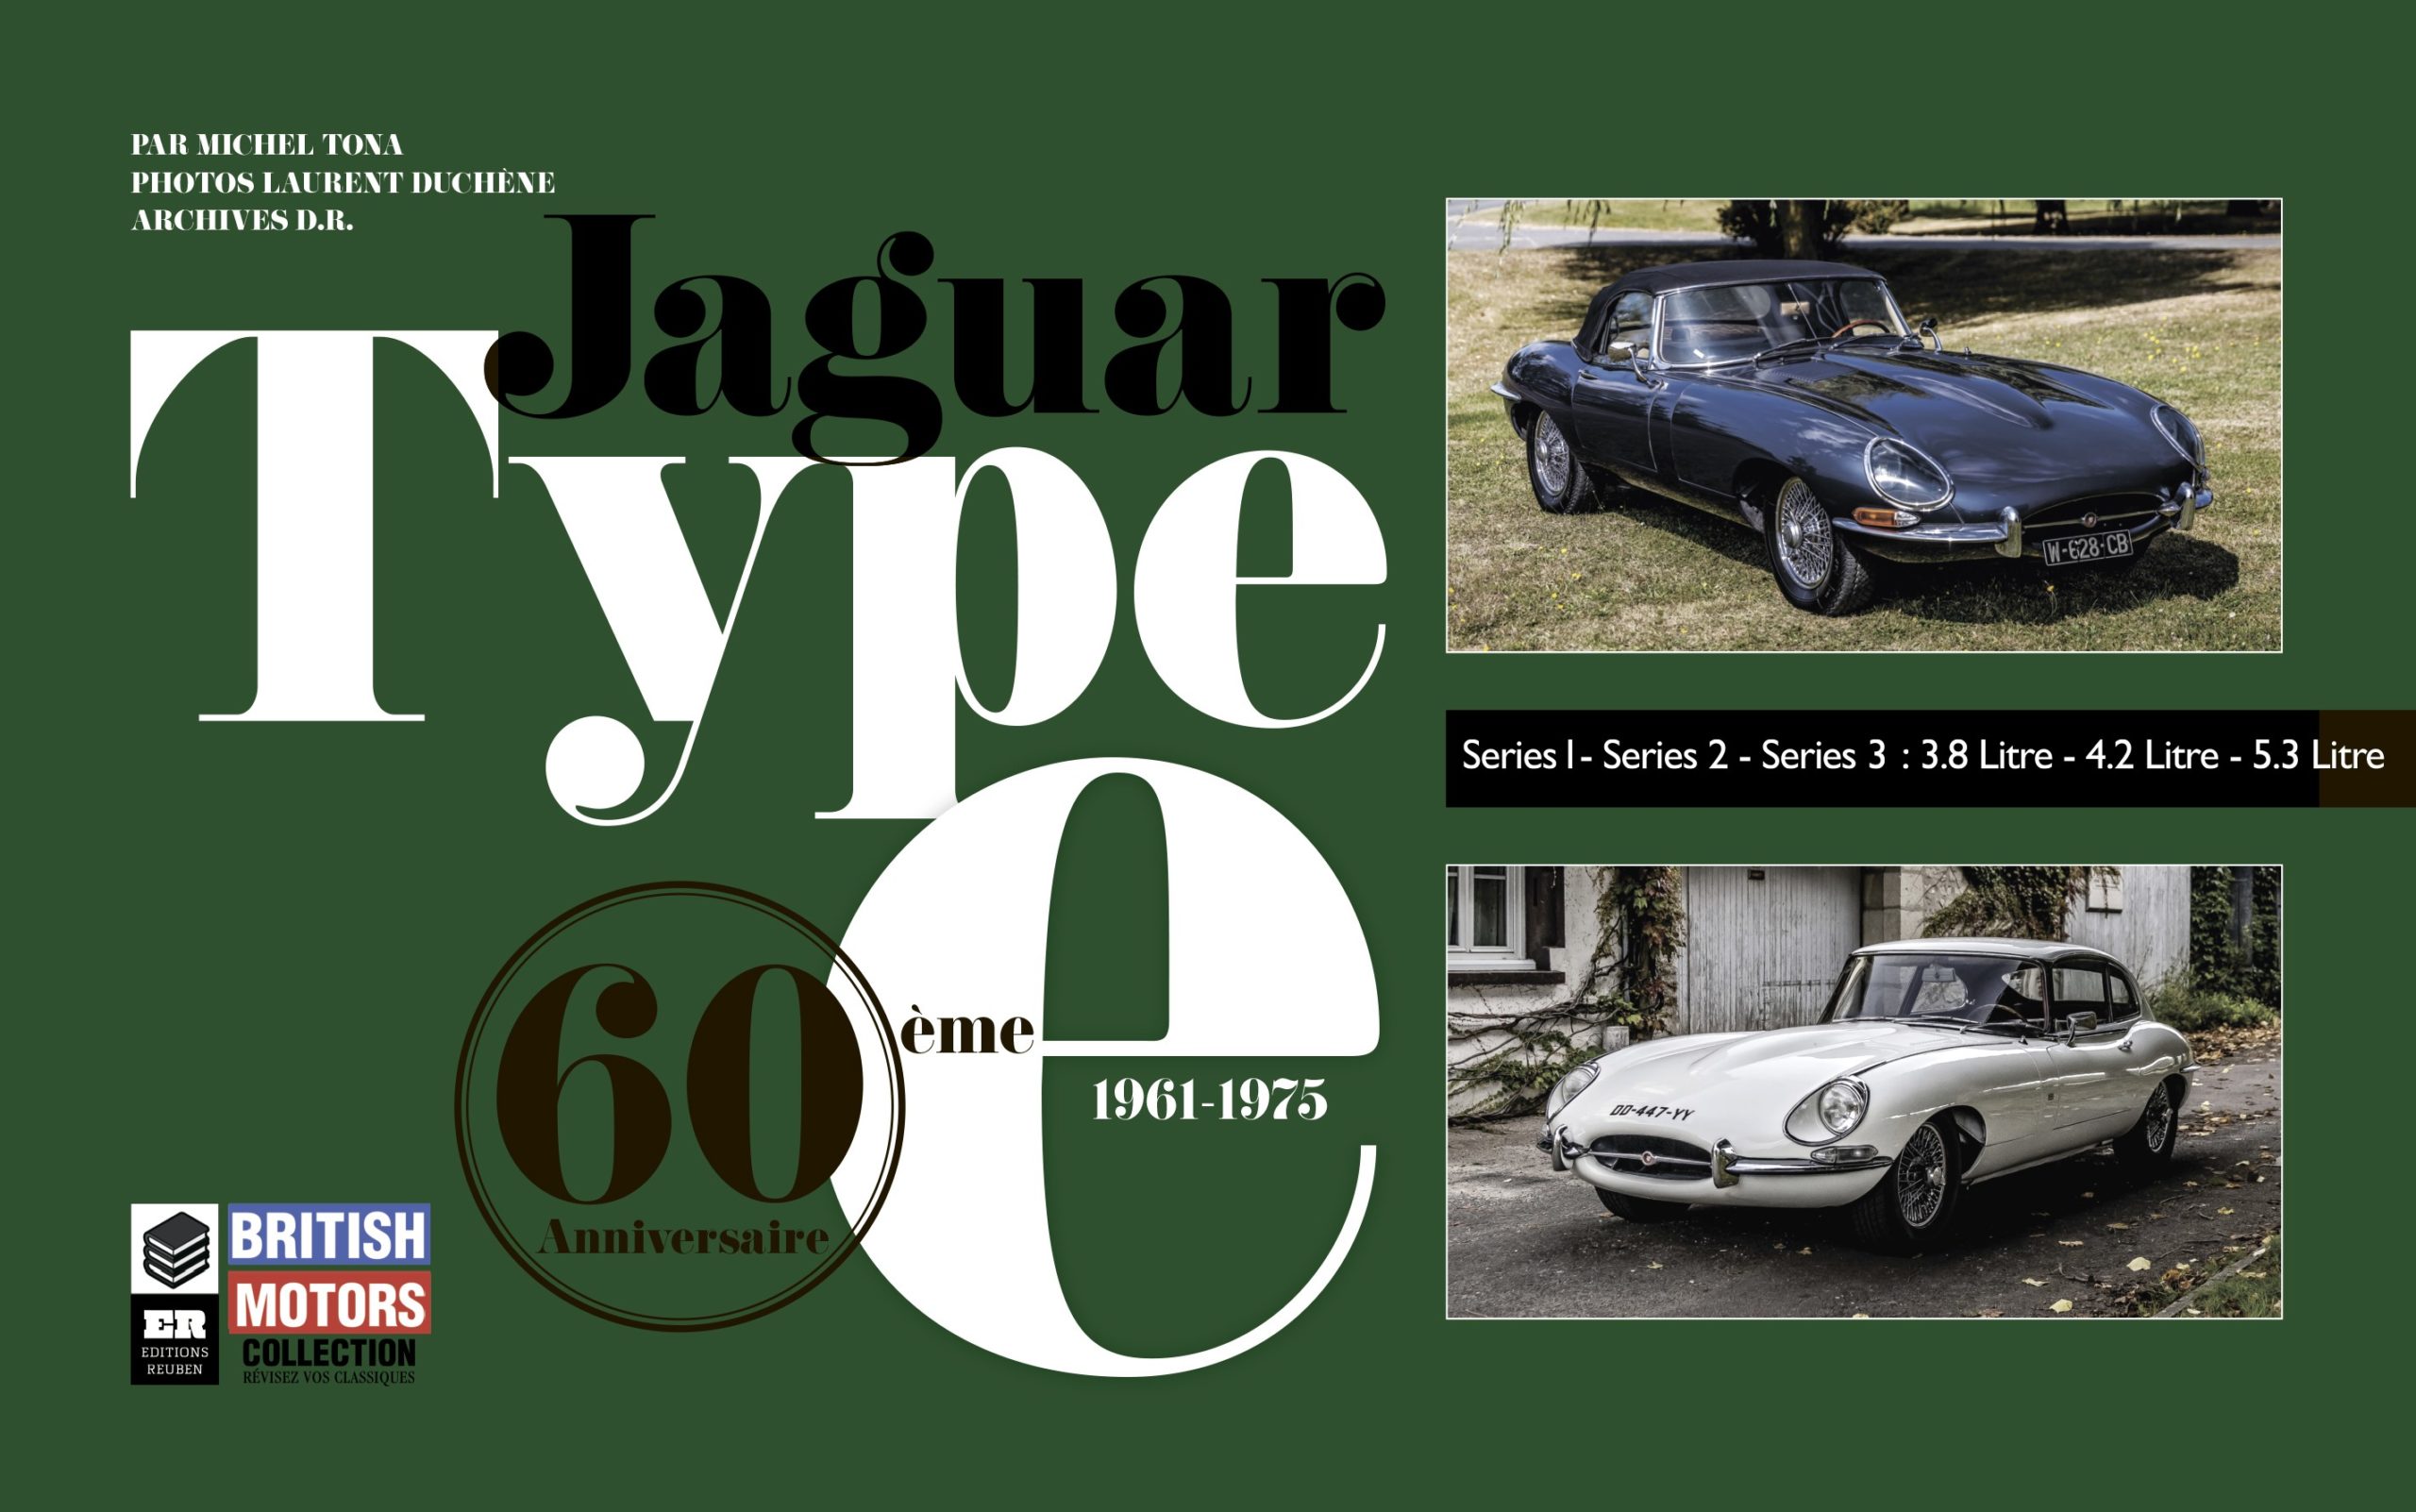 Jaguar Type E - 60 ans 1961-1975